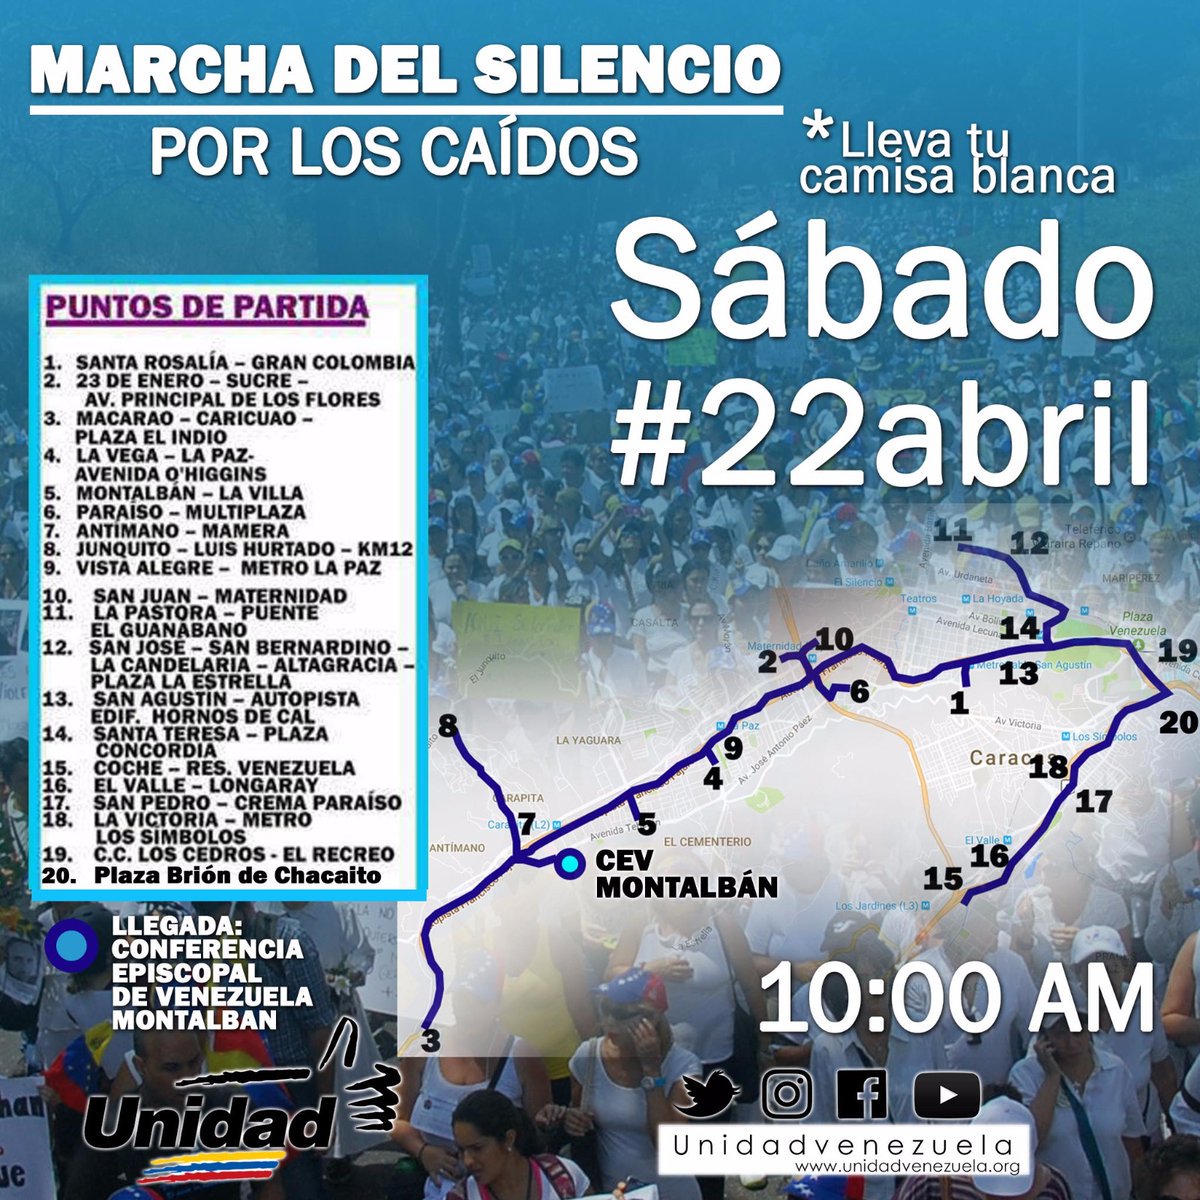 Estos son los puntos de salida de la “Marcha del Silencio” este #22abril